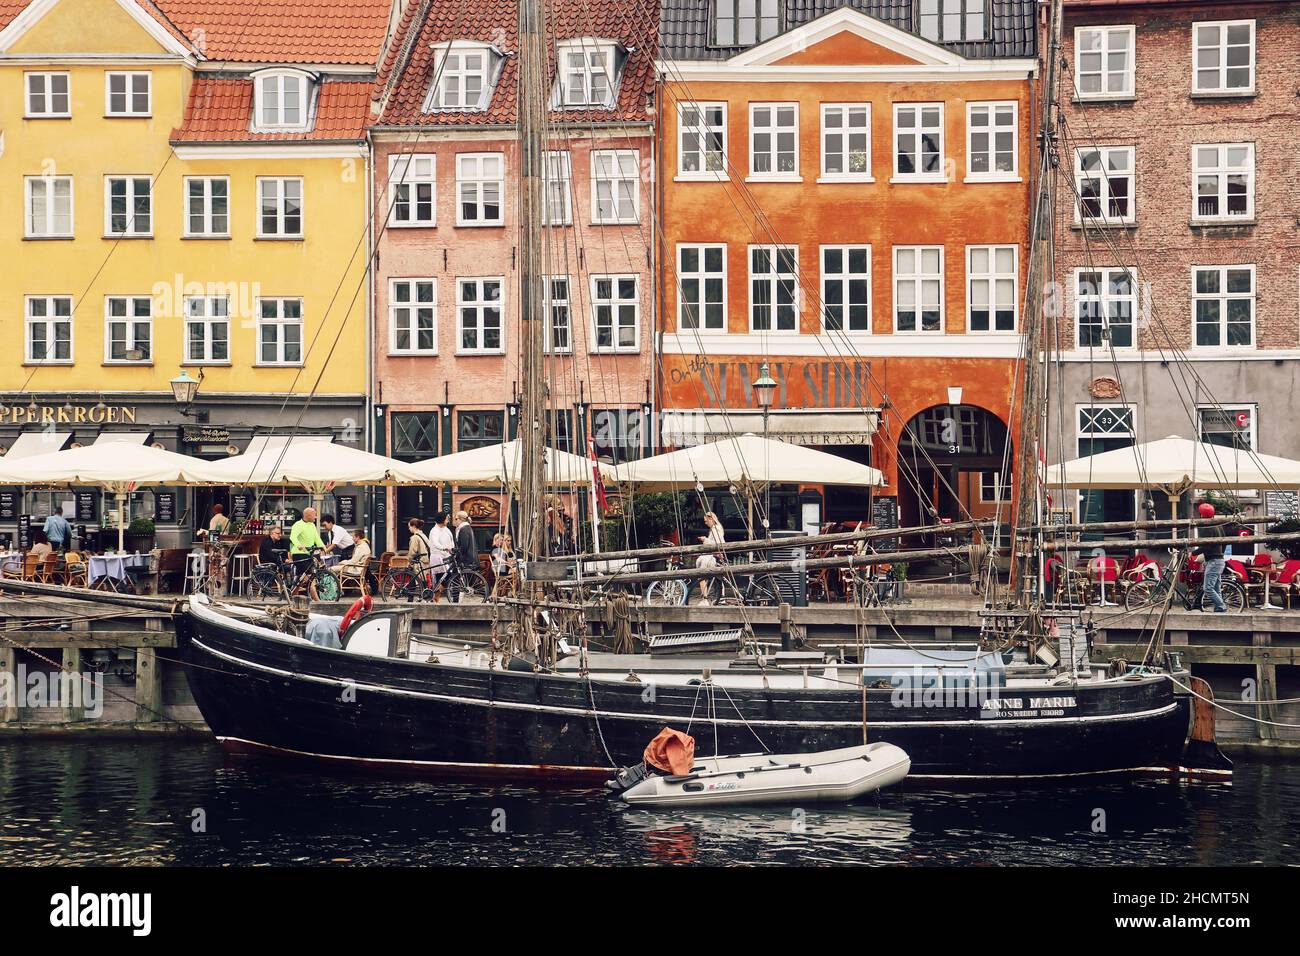 KOPENHAGEN, DÄNEMARK - Blick auf den Hafen von Nyhavn, das berühmte Wahrzeichen Kopenhagens, der im 17th. Jahrhundert erbaut wurde und von antiken Häusern mit hellen Farben flankiert wird Stockfoto